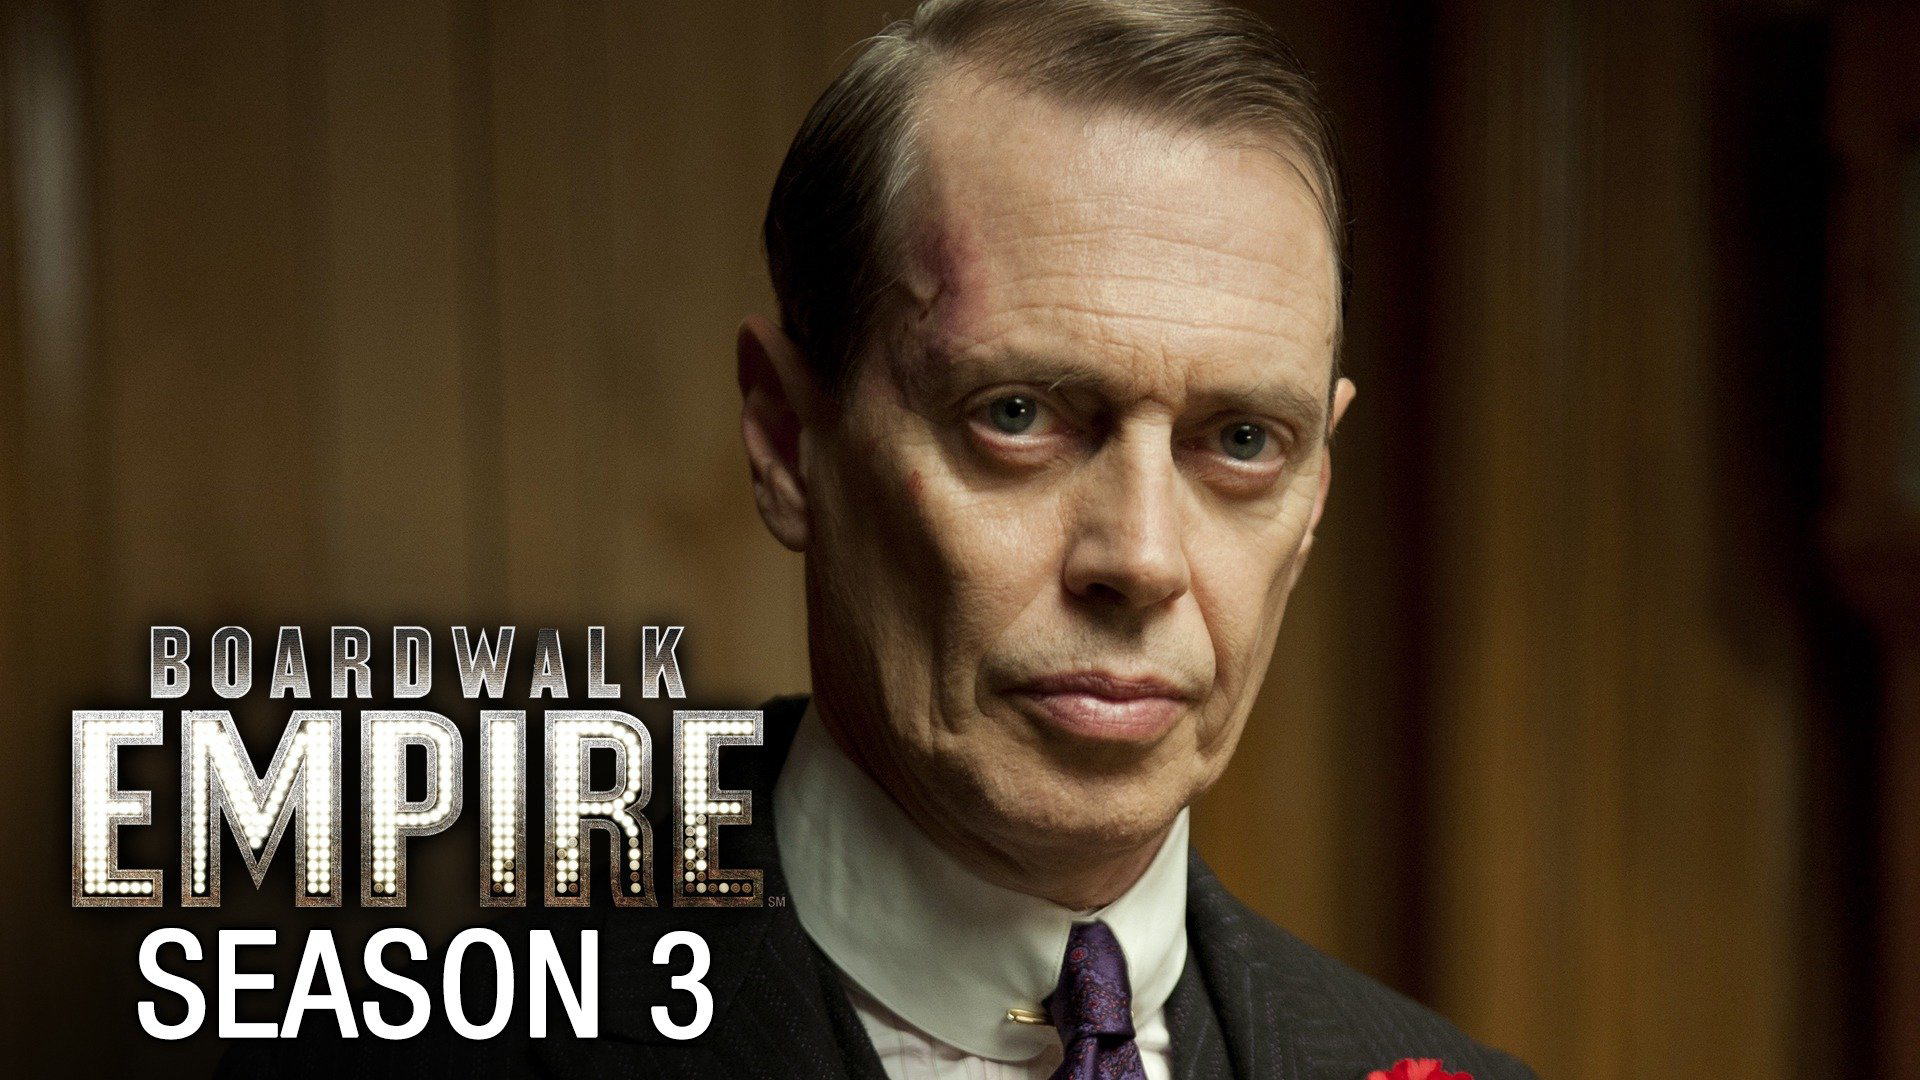 Boardwalk Empire (Season 3) / Boardwalk Empire (Season 3) (2012)